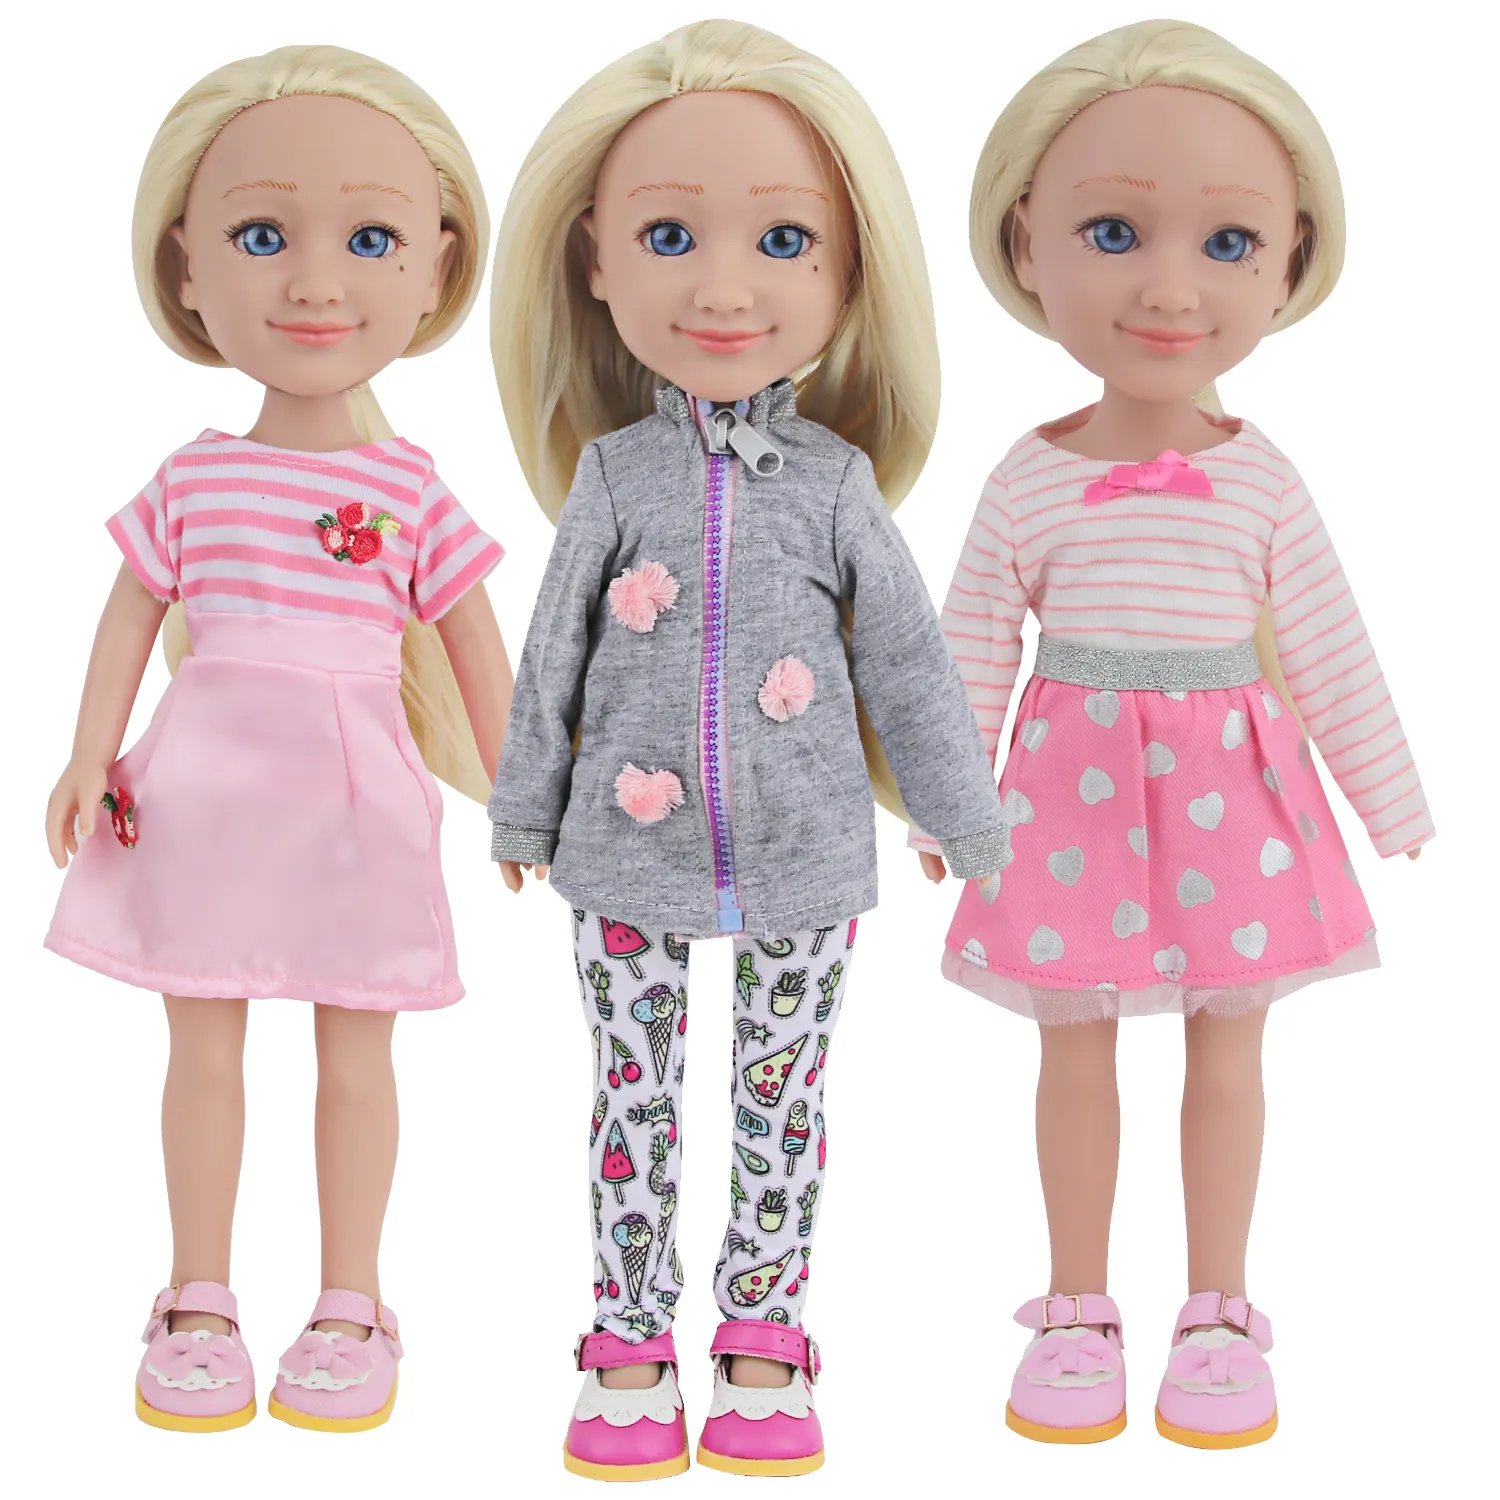 Linda muñeca de vinilo de 14 ''realista vinilo completo juguetes para juego de imitación muñecas de 14 pulgadas niño niña